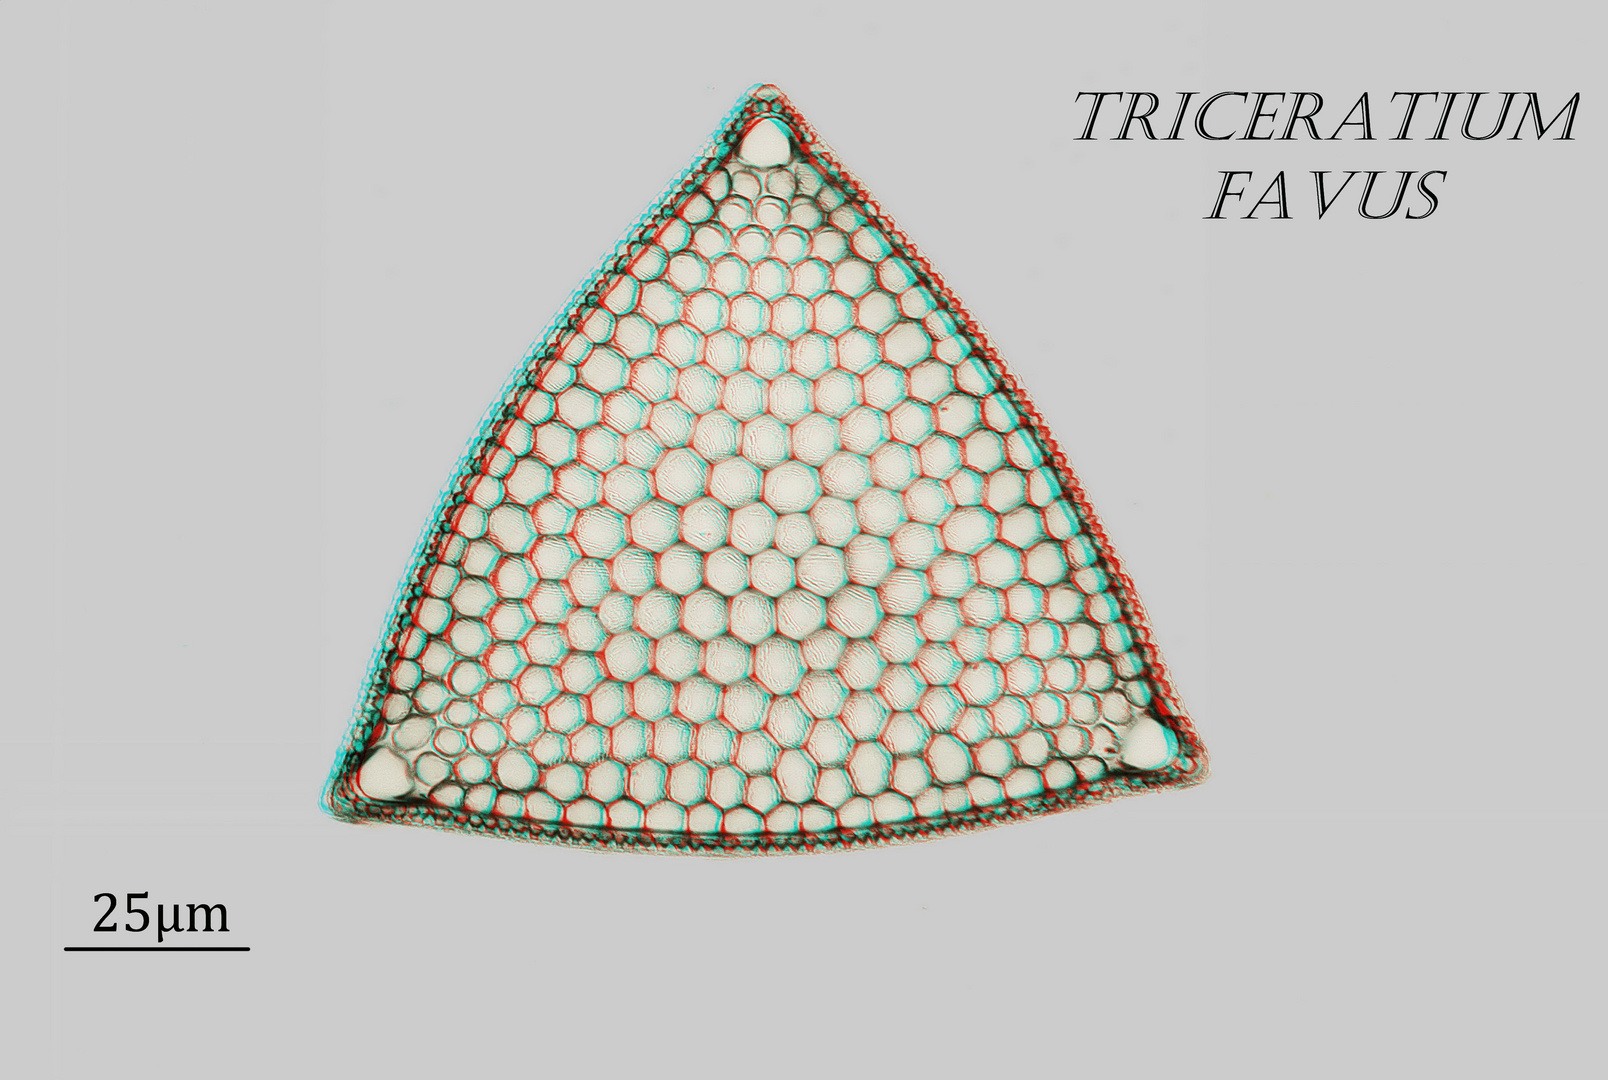  Triceratium favus in 3D